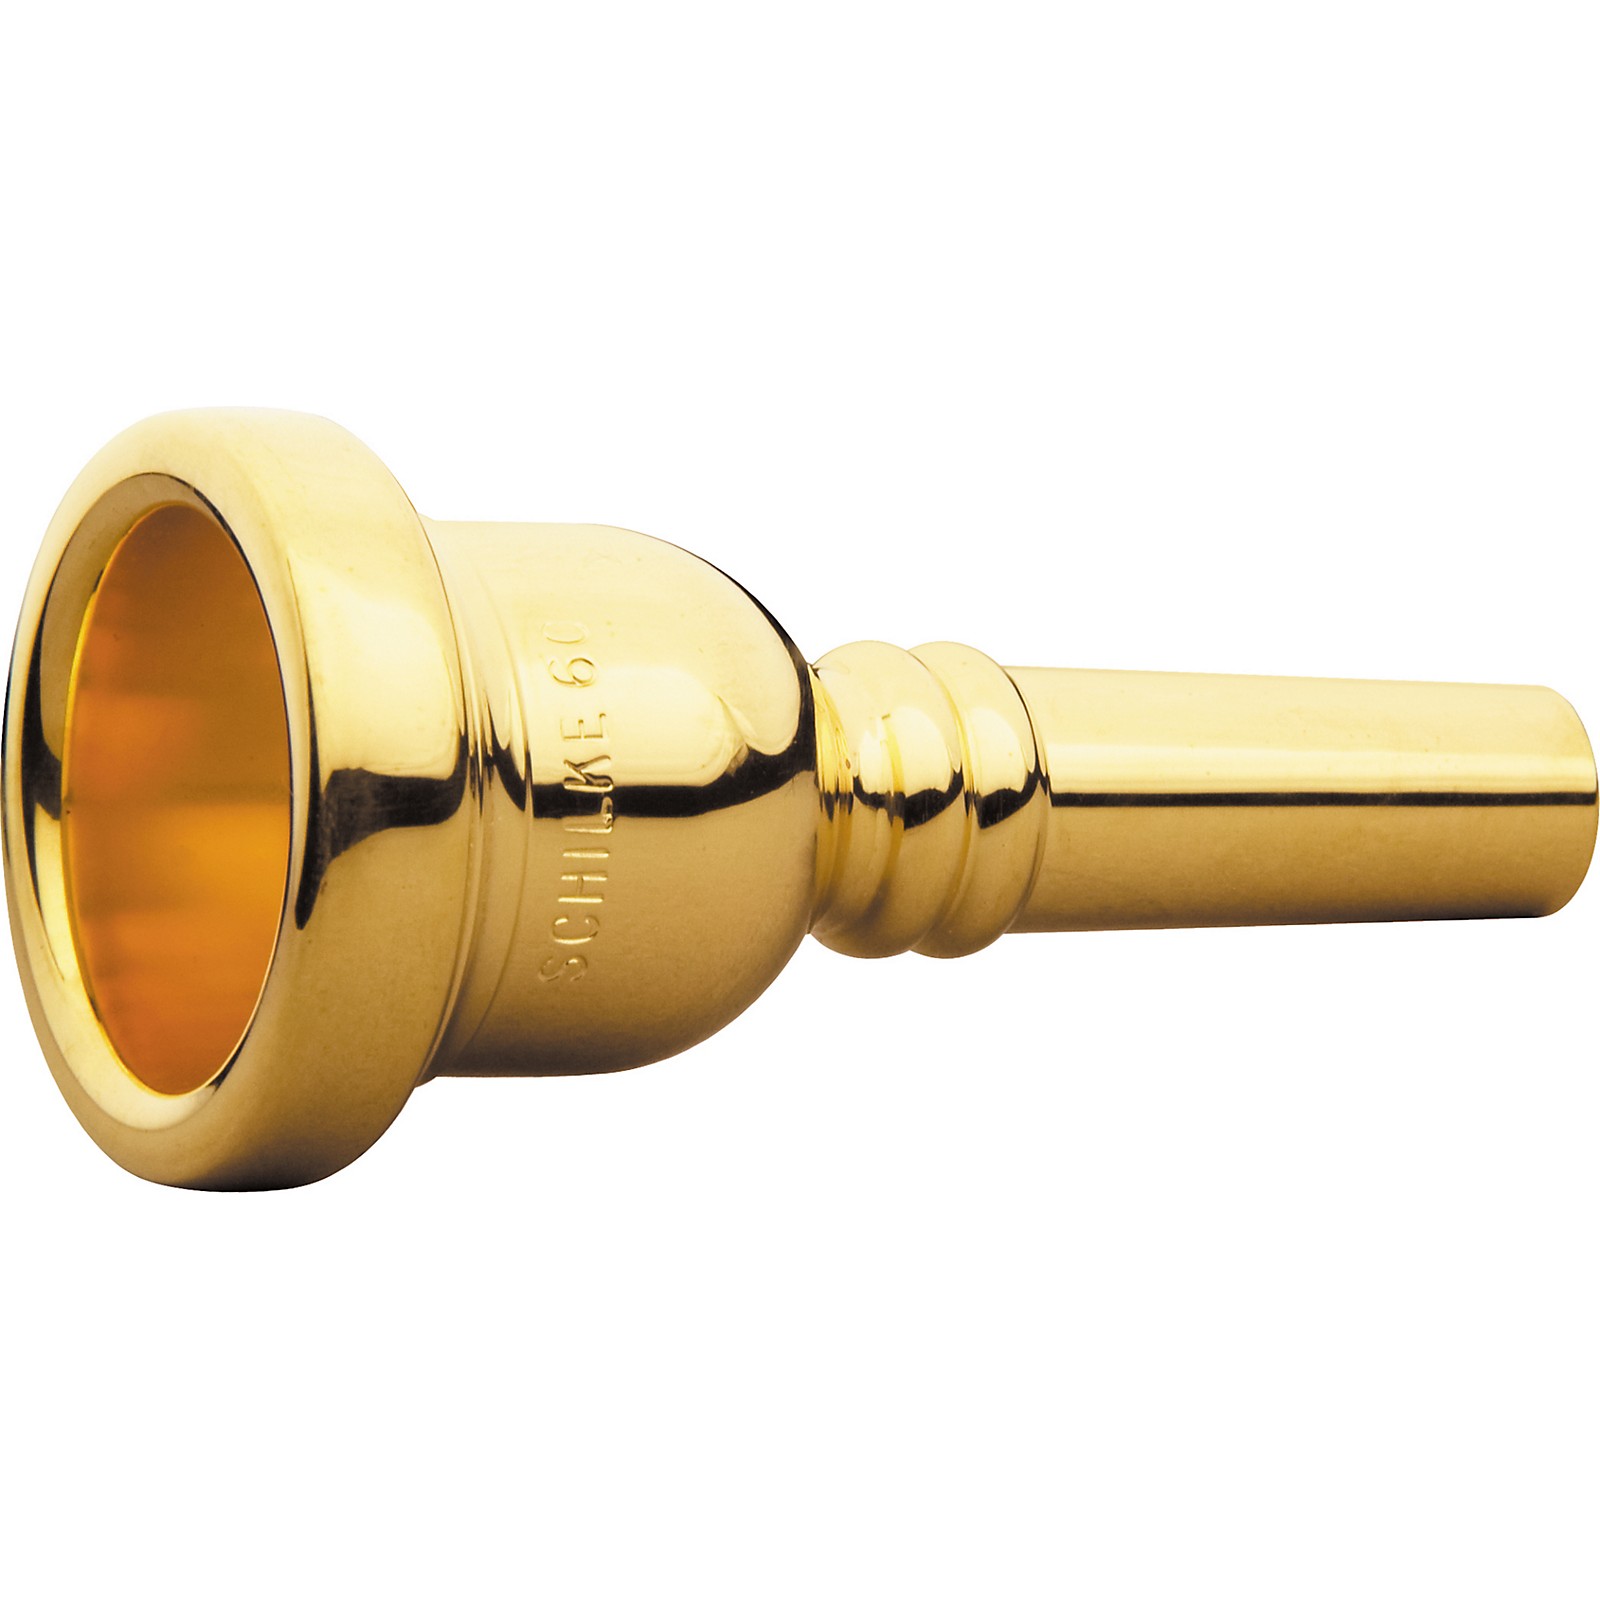 Schilke Standard Series Large Shank Trombone Mouthpiece in Gold